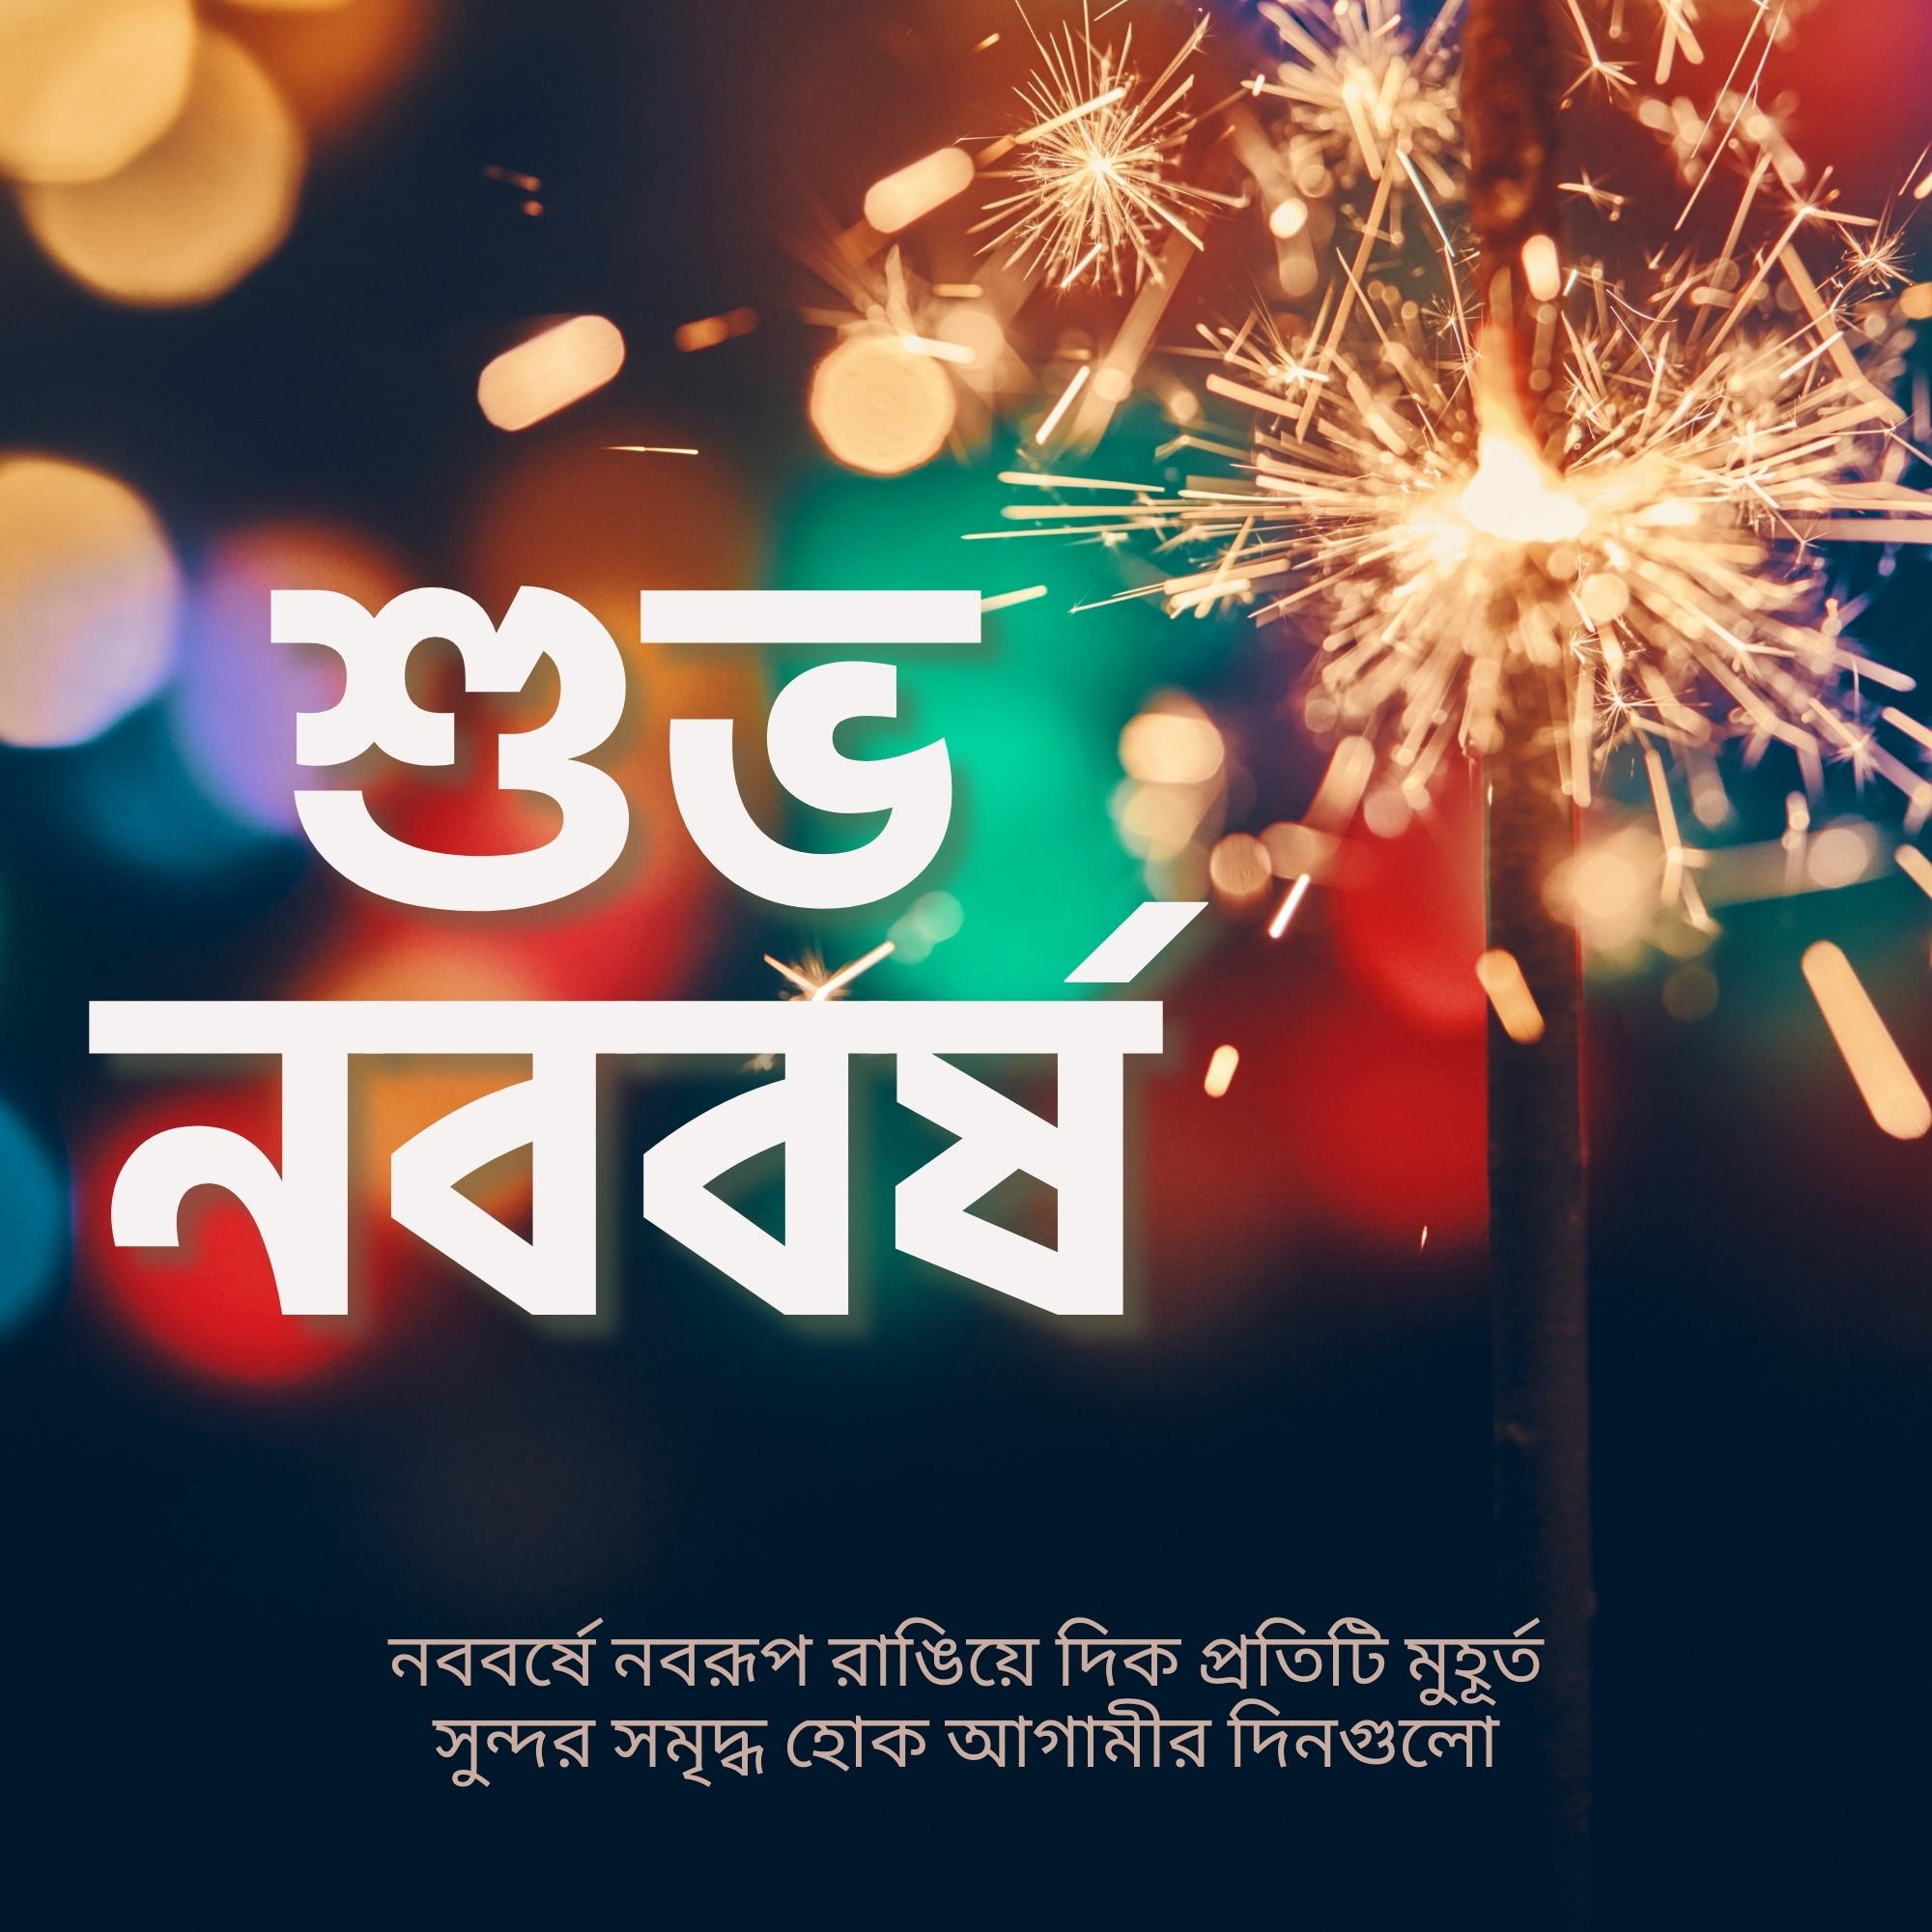 Shubho Nababarsha Bangla Image Hd